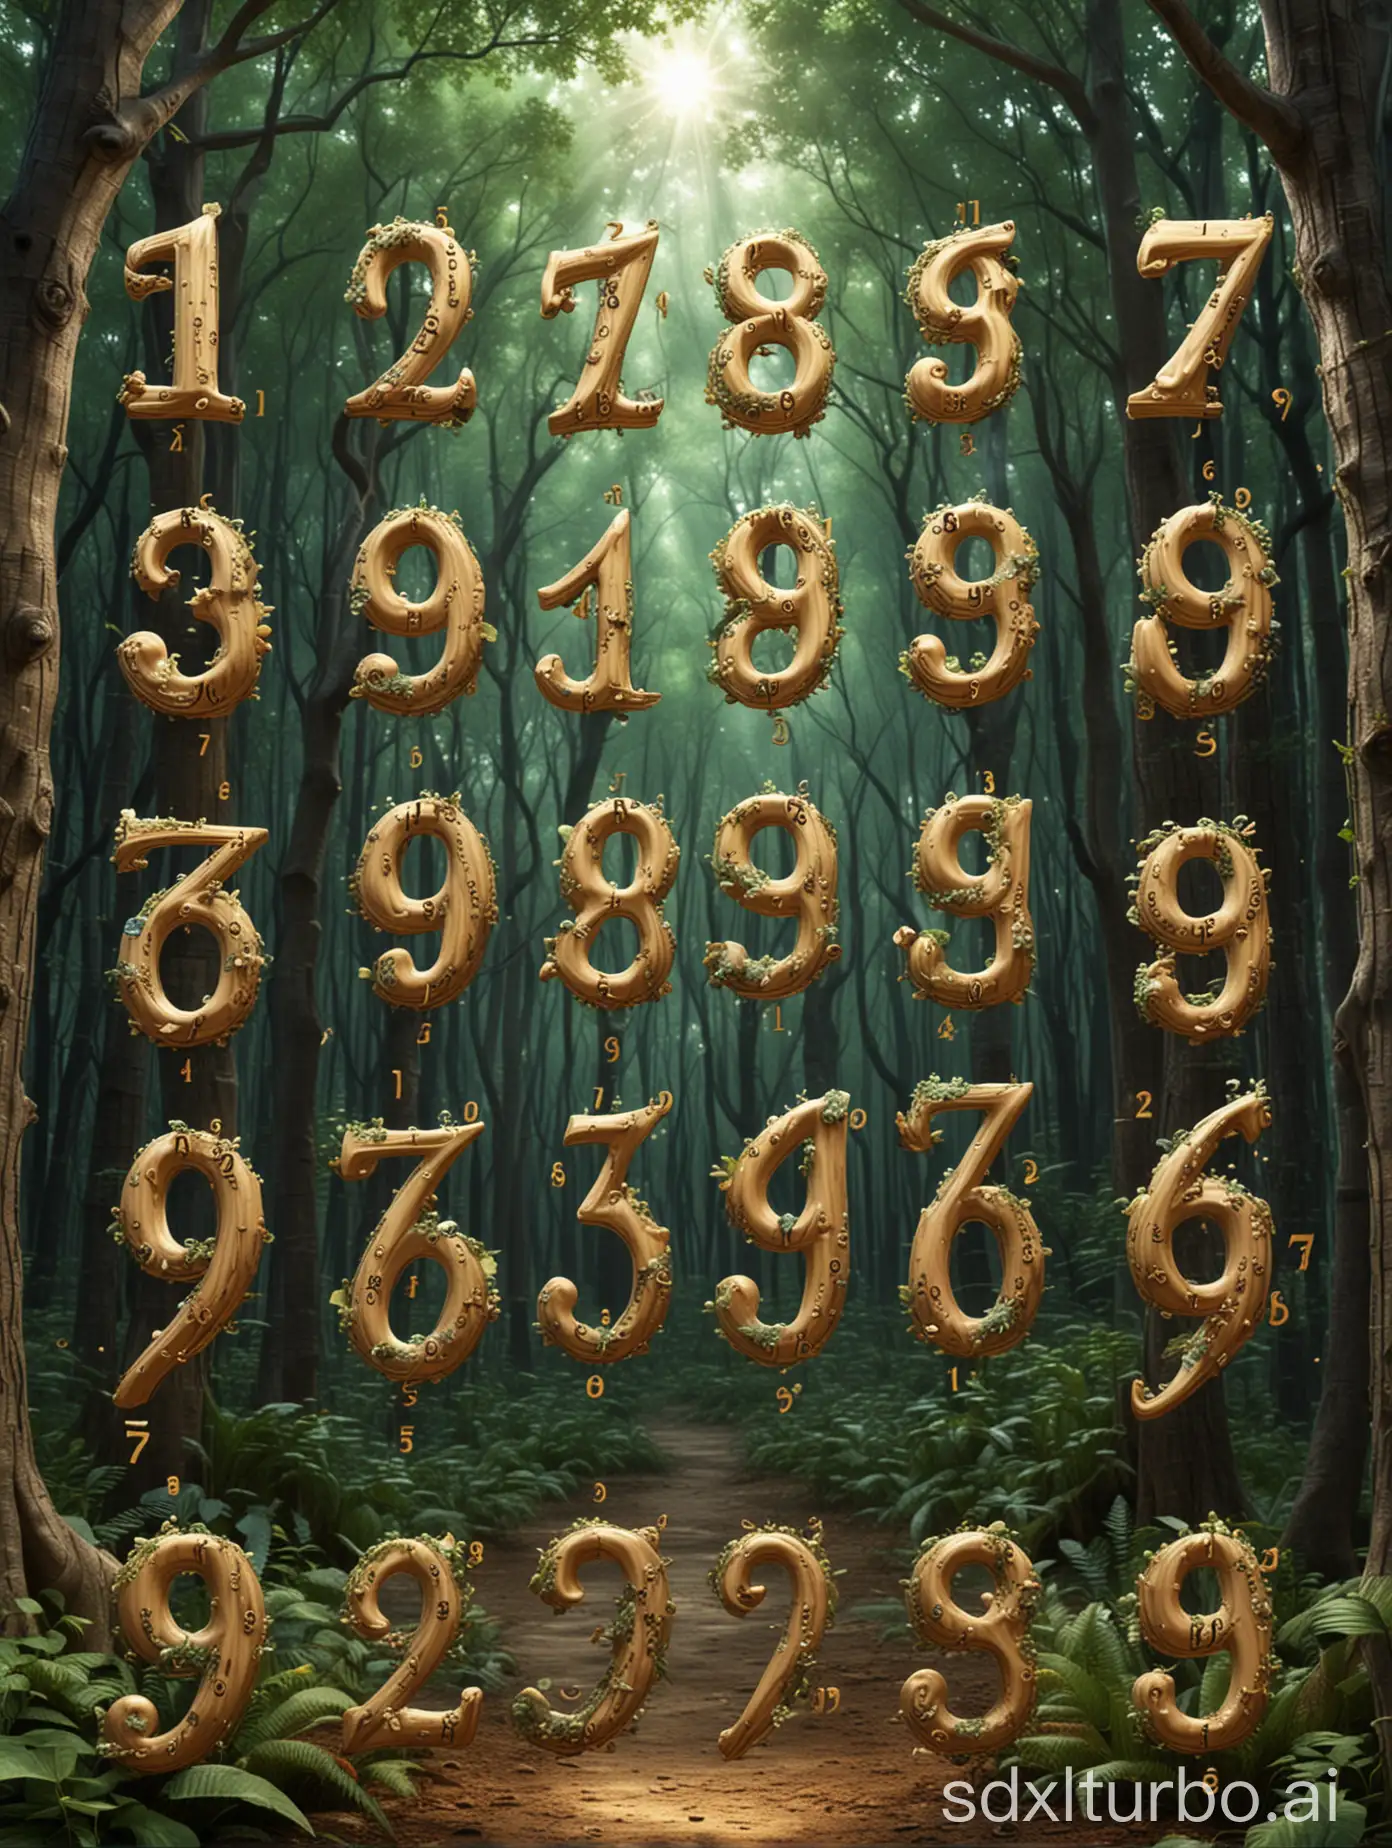 阿拉伯数字1、2、3、4、5、6、7、8、9在奇幻的森林中闪动。